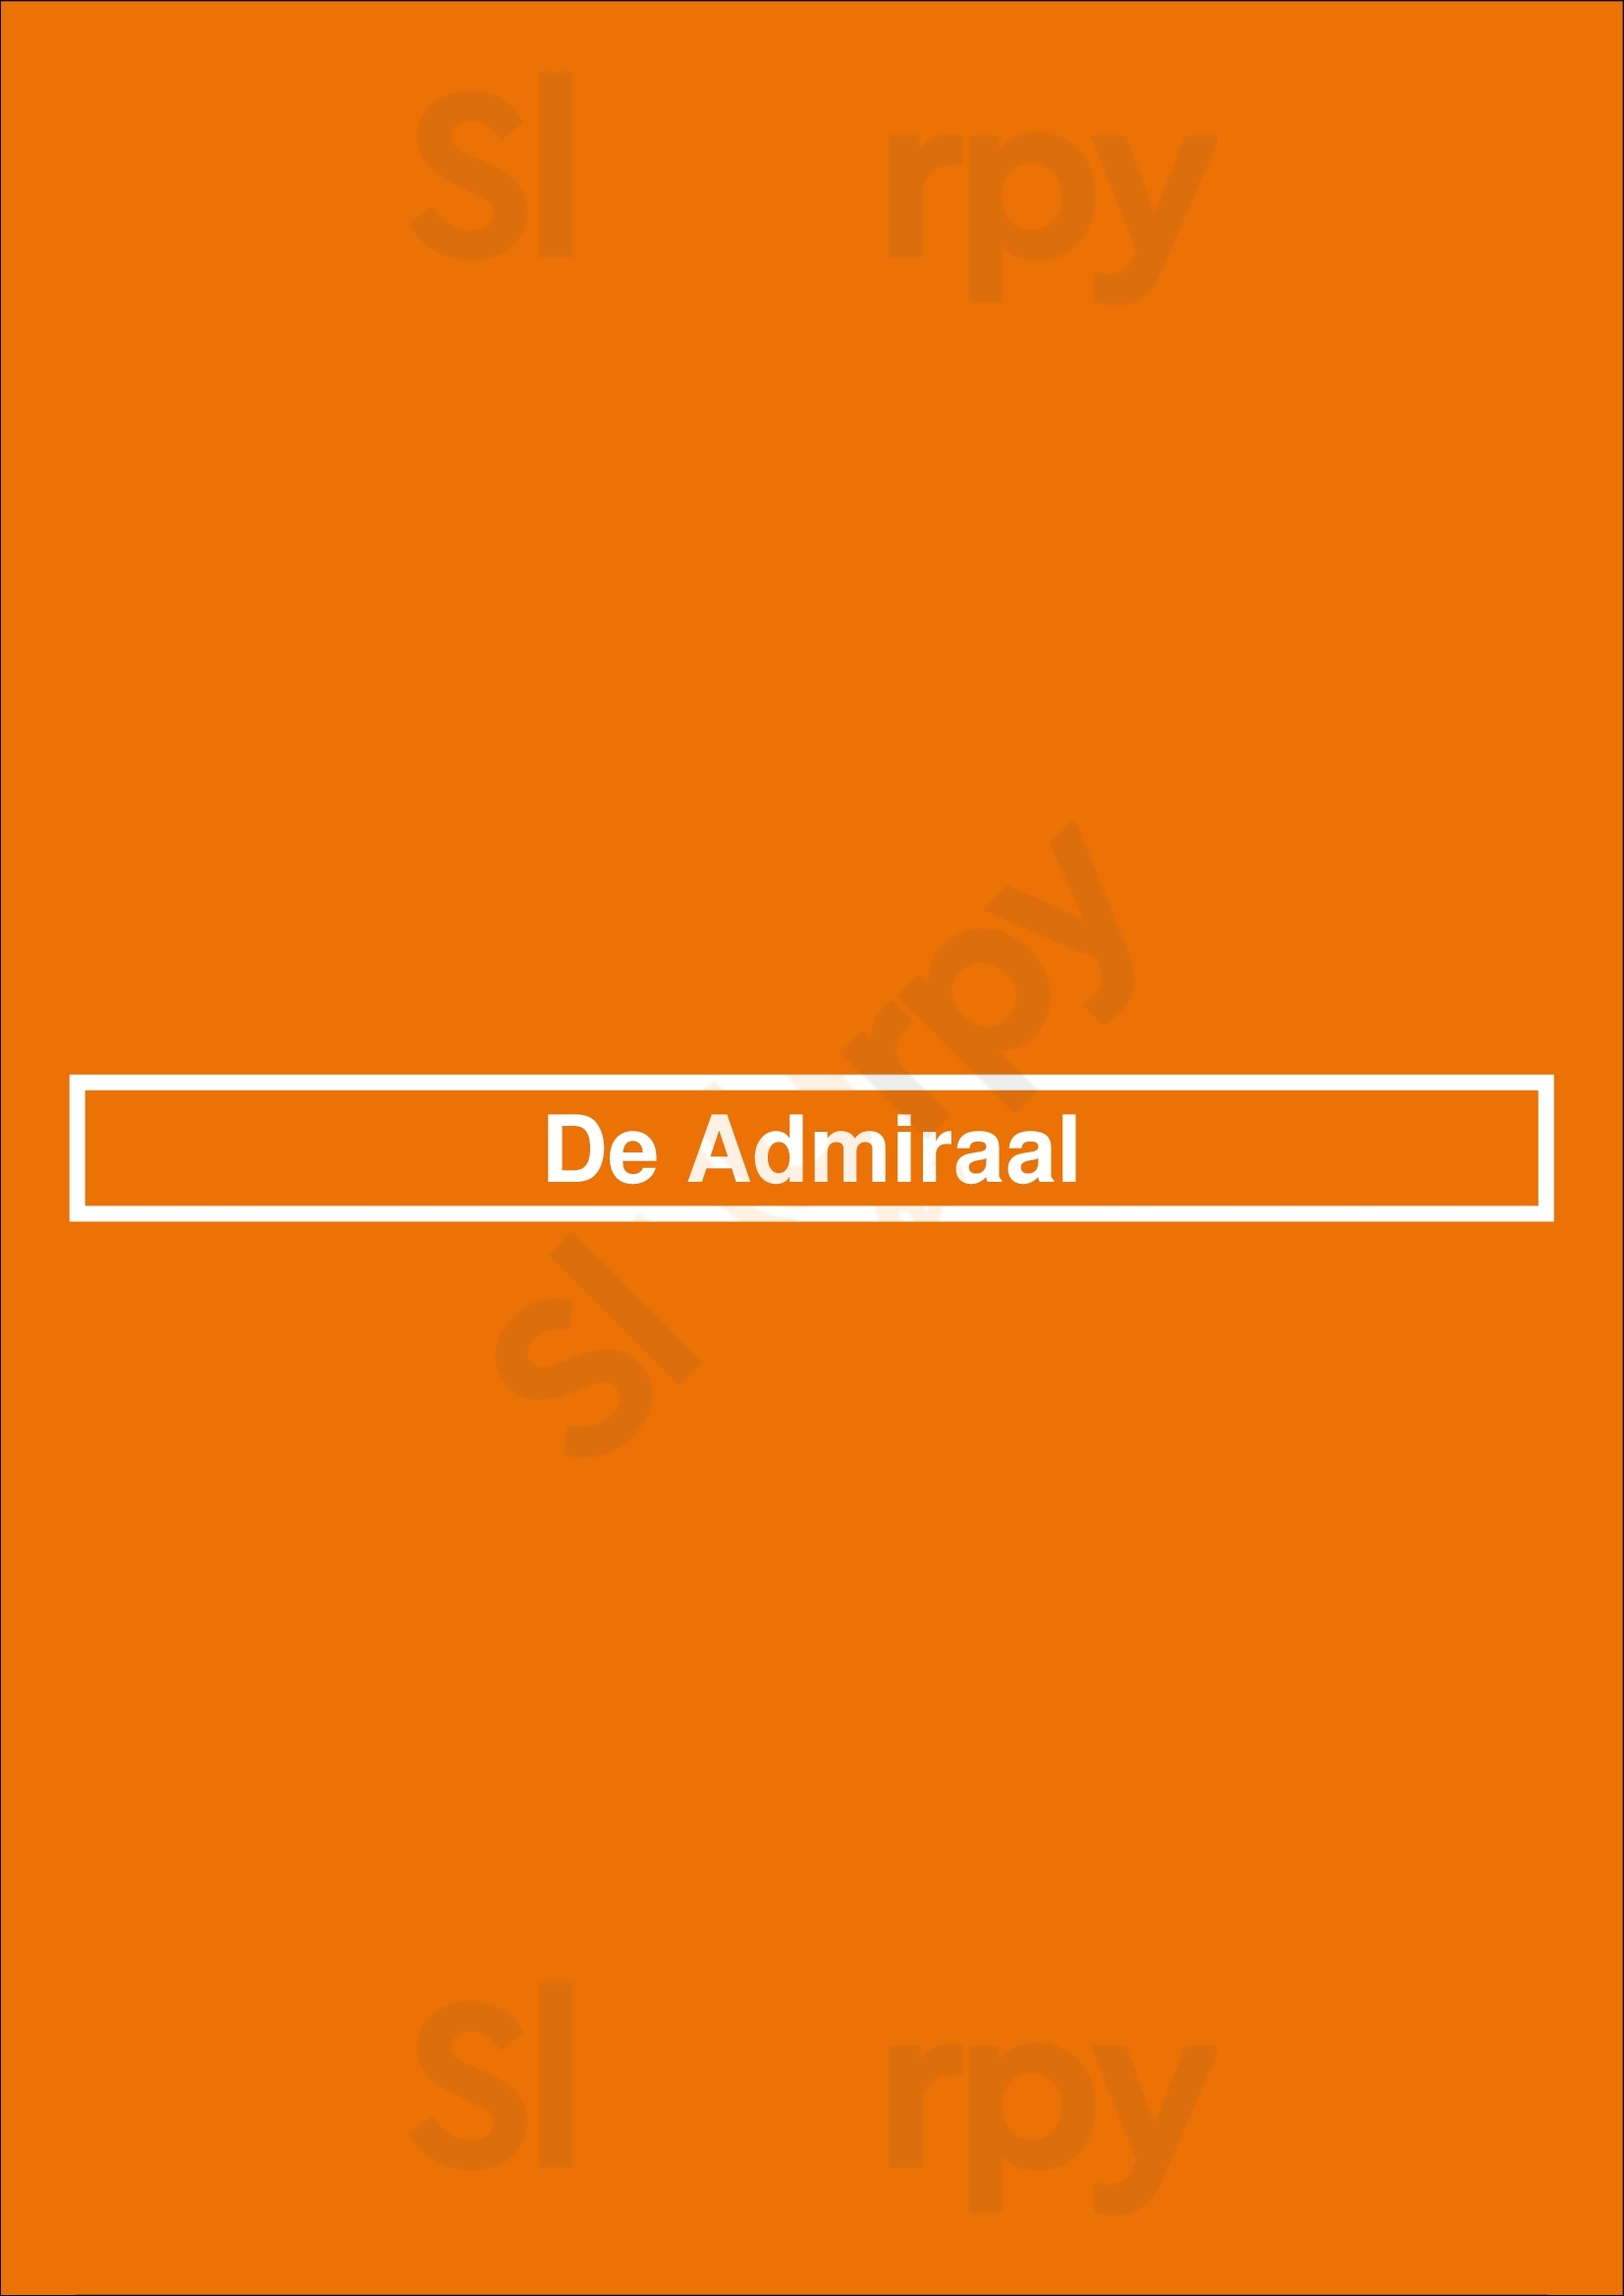 De Admiraal Zwolle Menu - 1